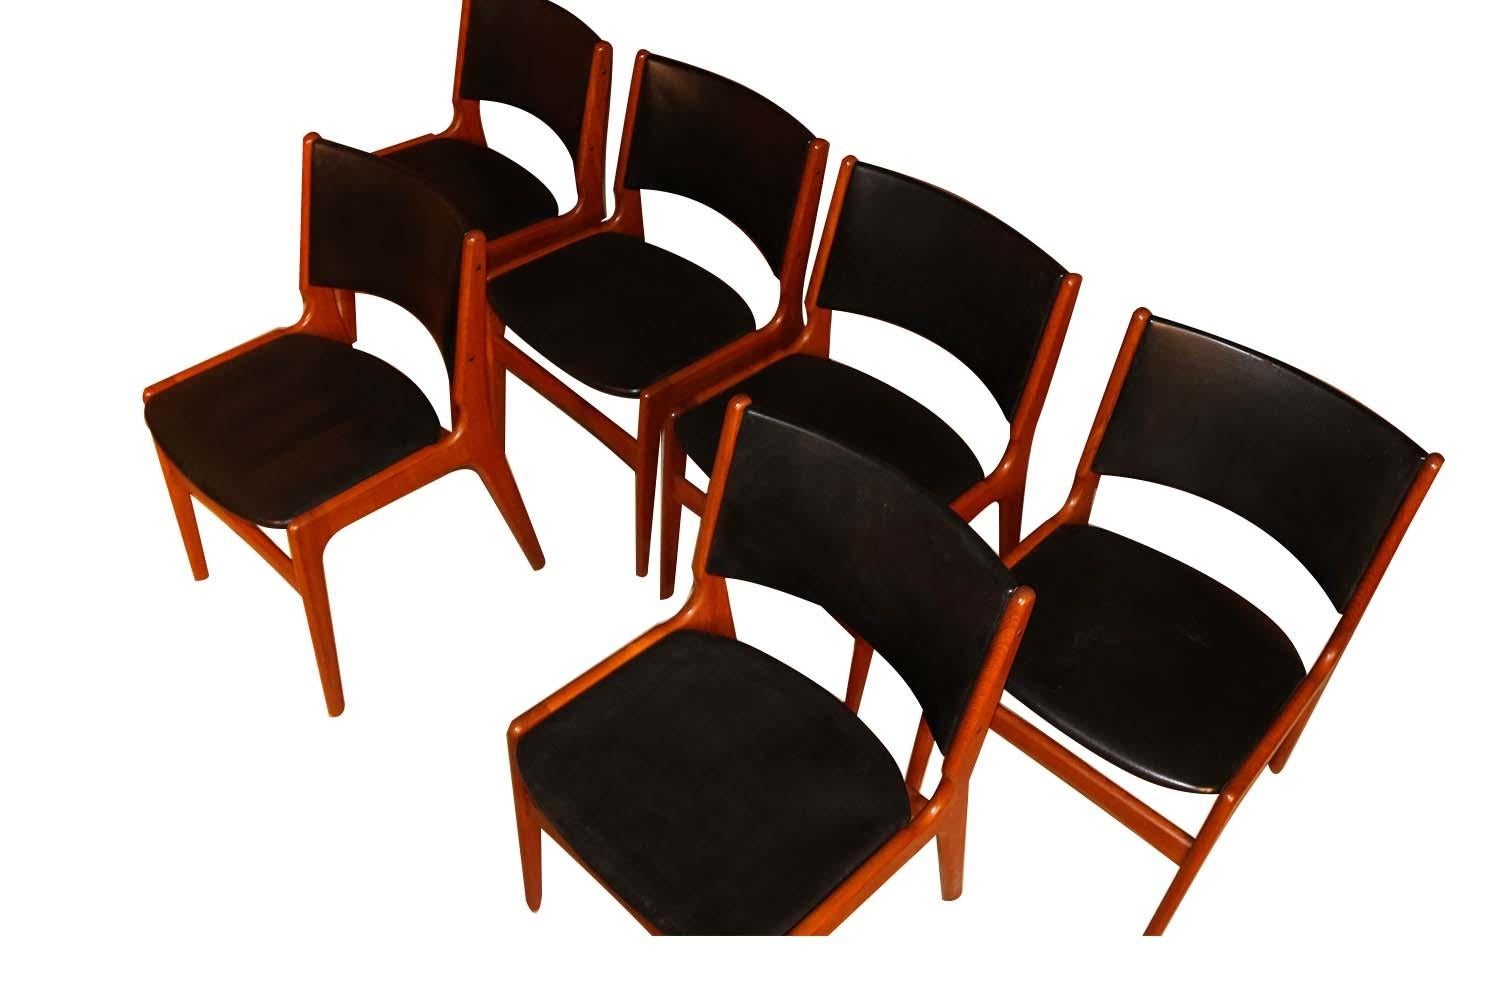 Sechs schöne Teakholz-Esszimmerstühle Modell #89 aus der Mitte des Jahrhunderts von dem skandinavischen Designer Erik Buch für Povl Dinesen, um 1960. Die organische und funktionale Ästhetik von Buch kommt in diesen wunderschön gefertigten modernen